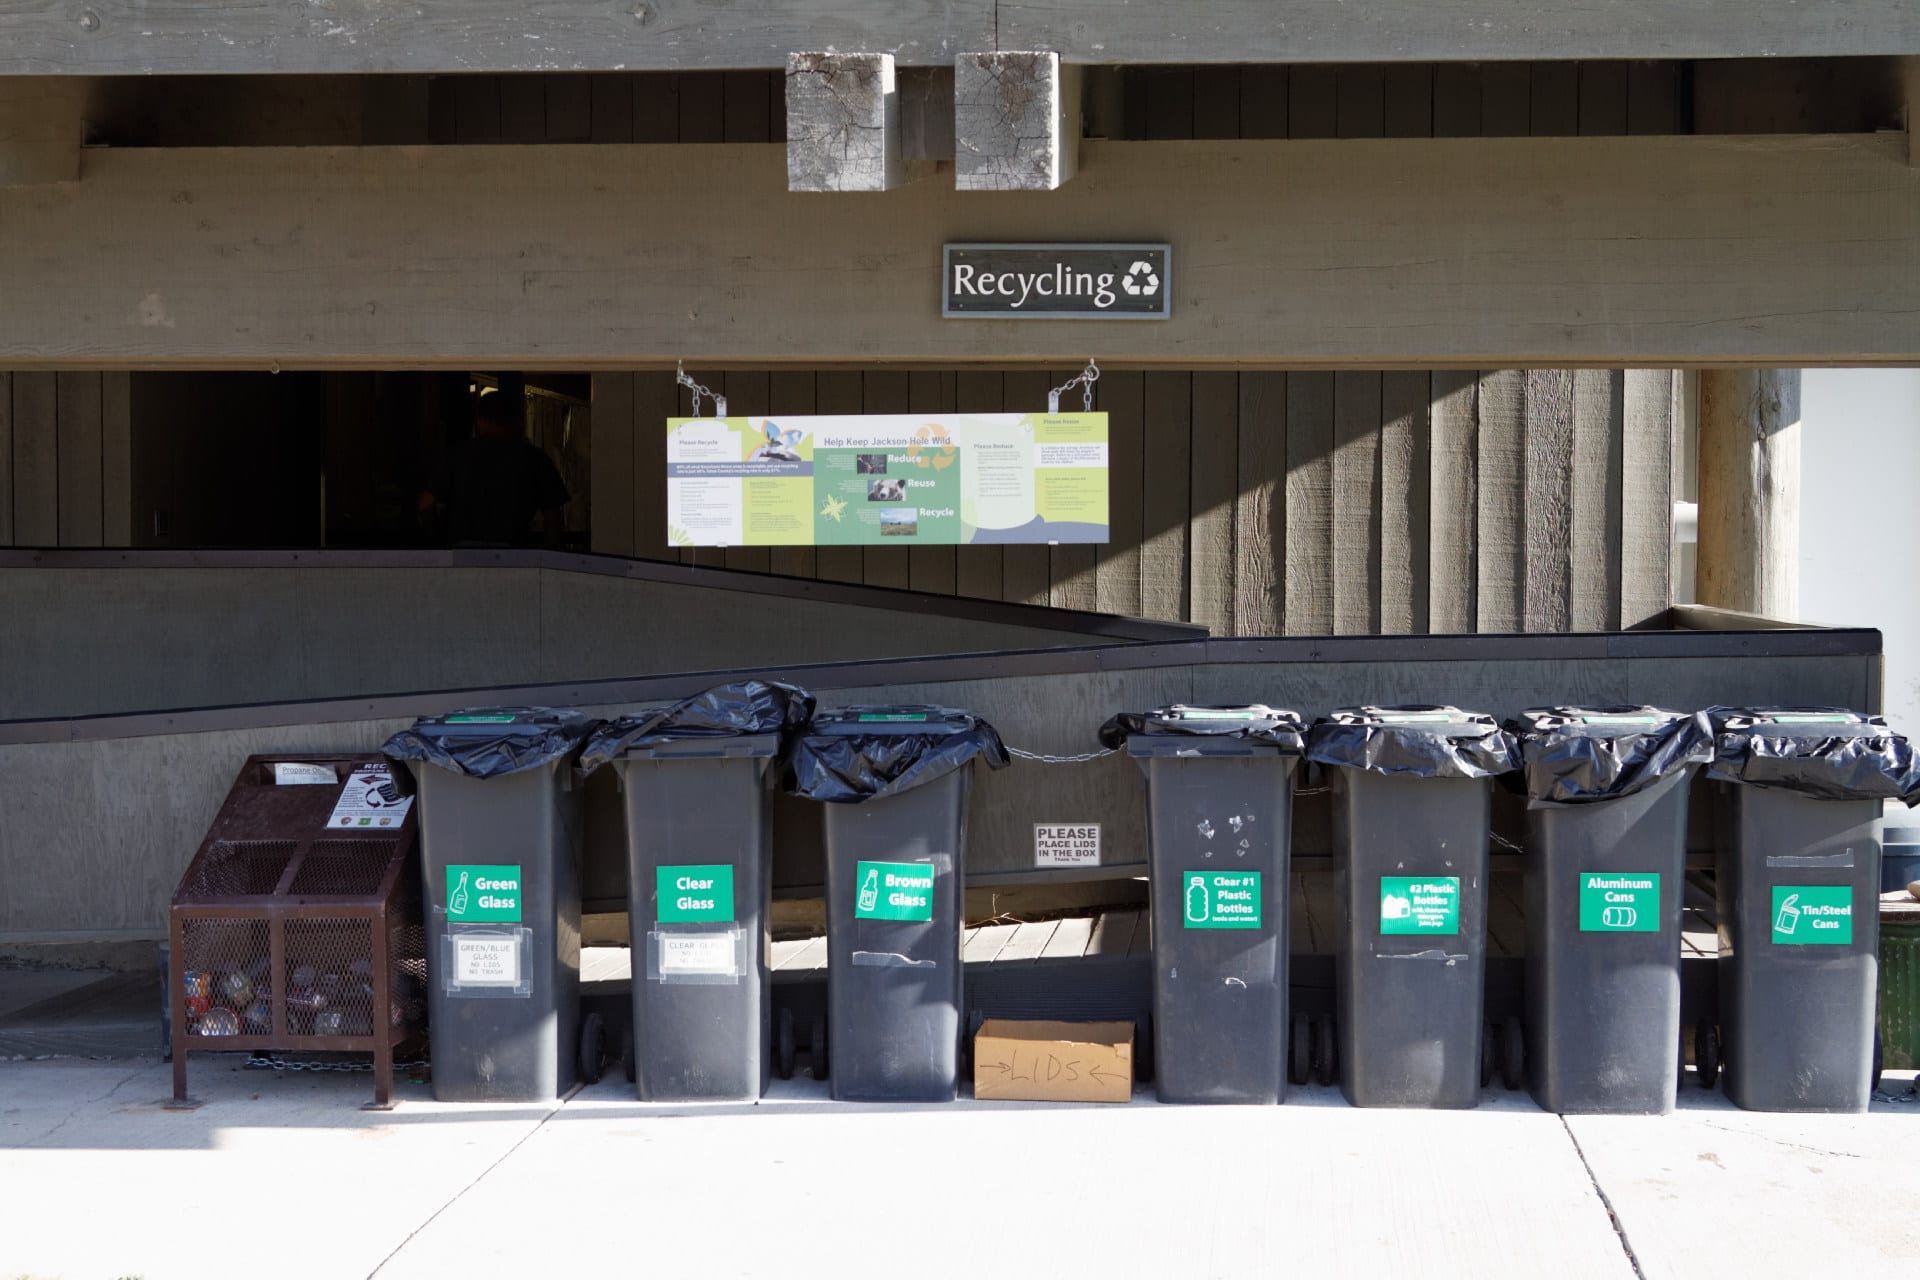 7 poubelles pour le recyclage